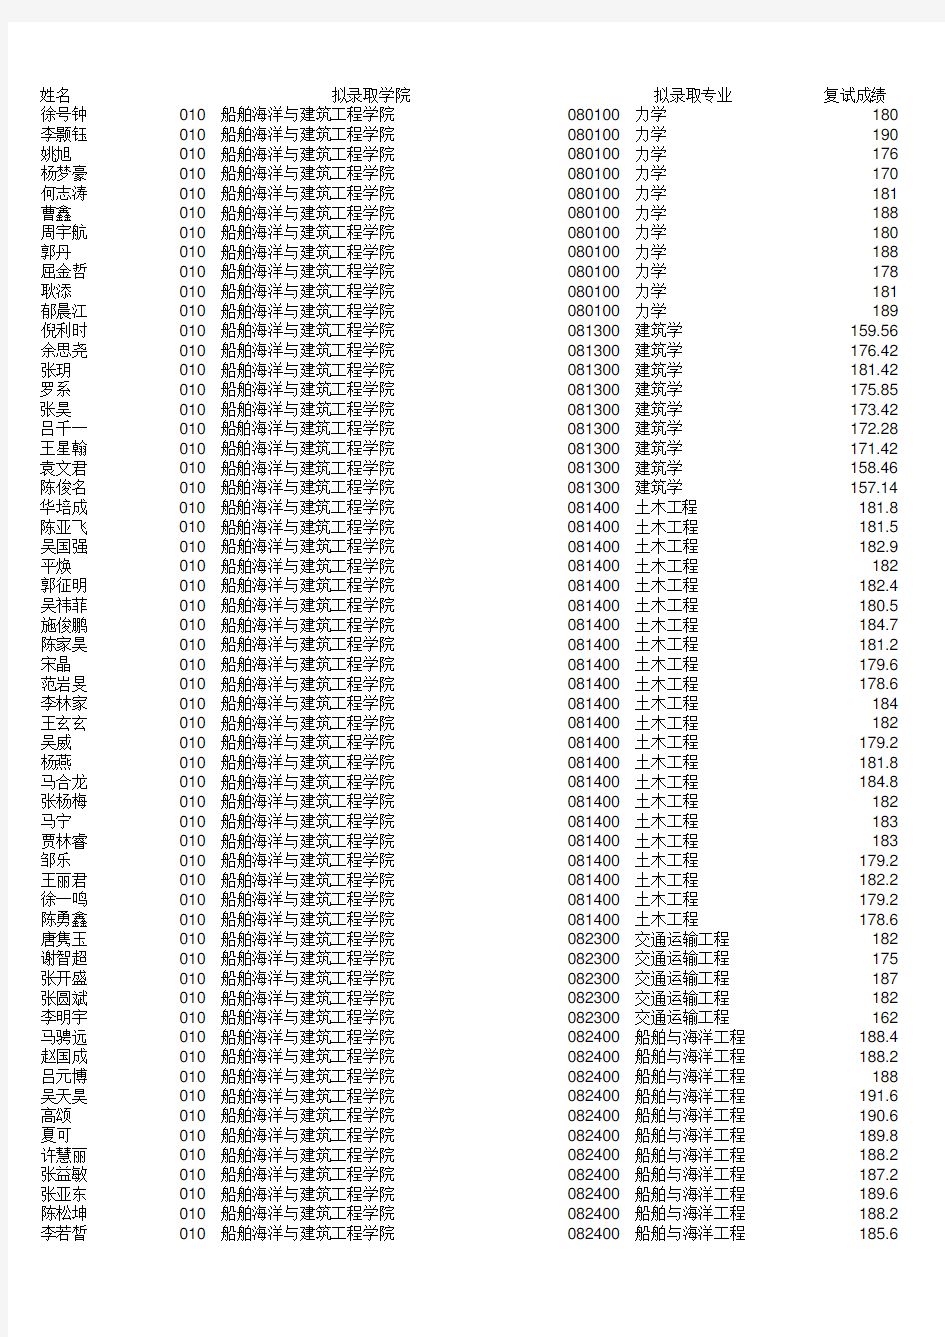 上海交通大学2015年拟录取推荐免试硕士研究生公示名单